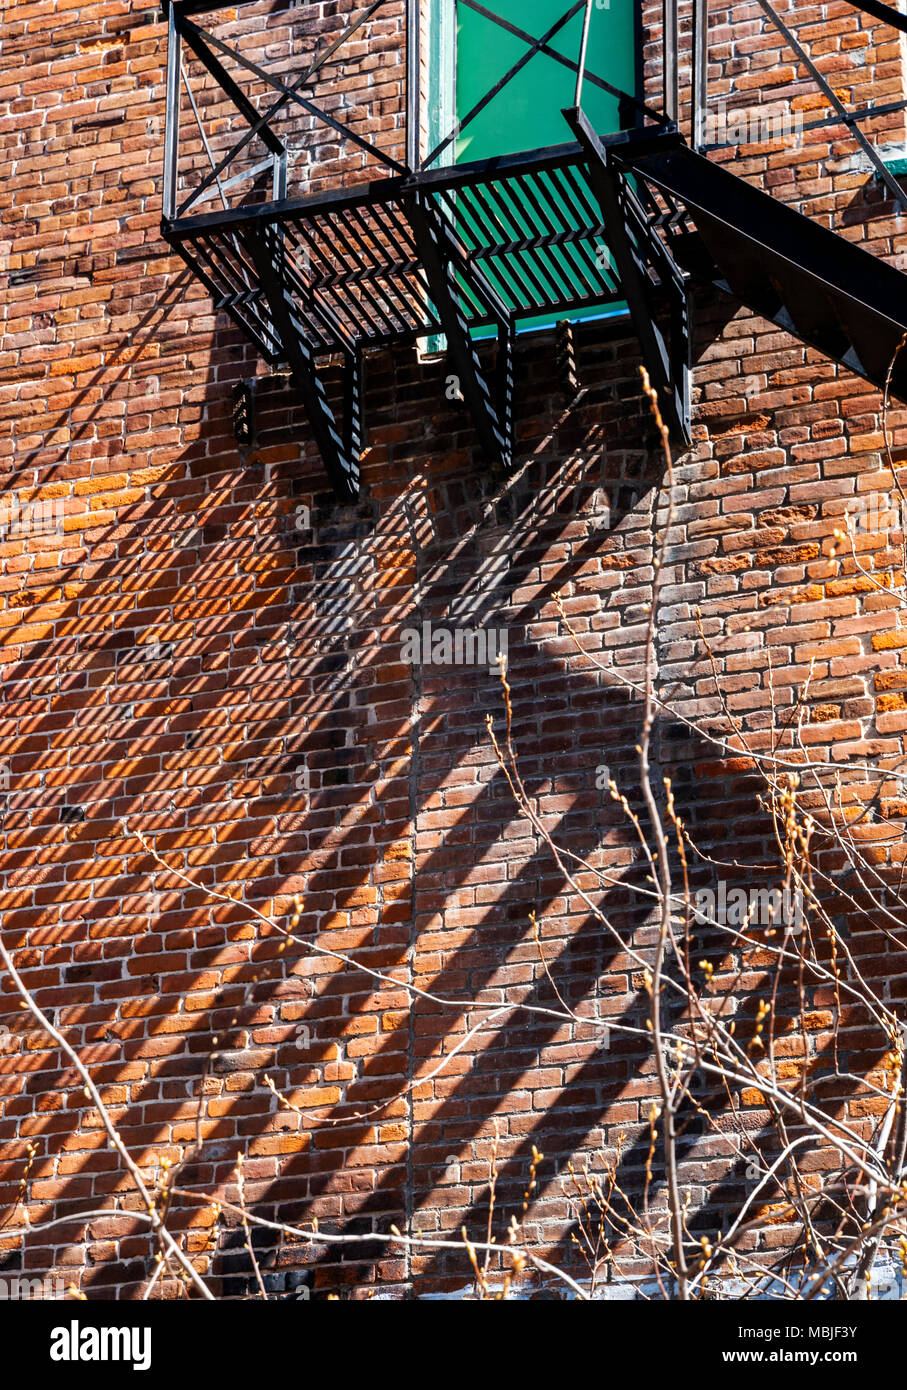 Fer à repasser fire escape jette des ombres graphiques sur l'historique édifice de brique ; District historique national ; Salida, Colorado, USA Banque D'Images